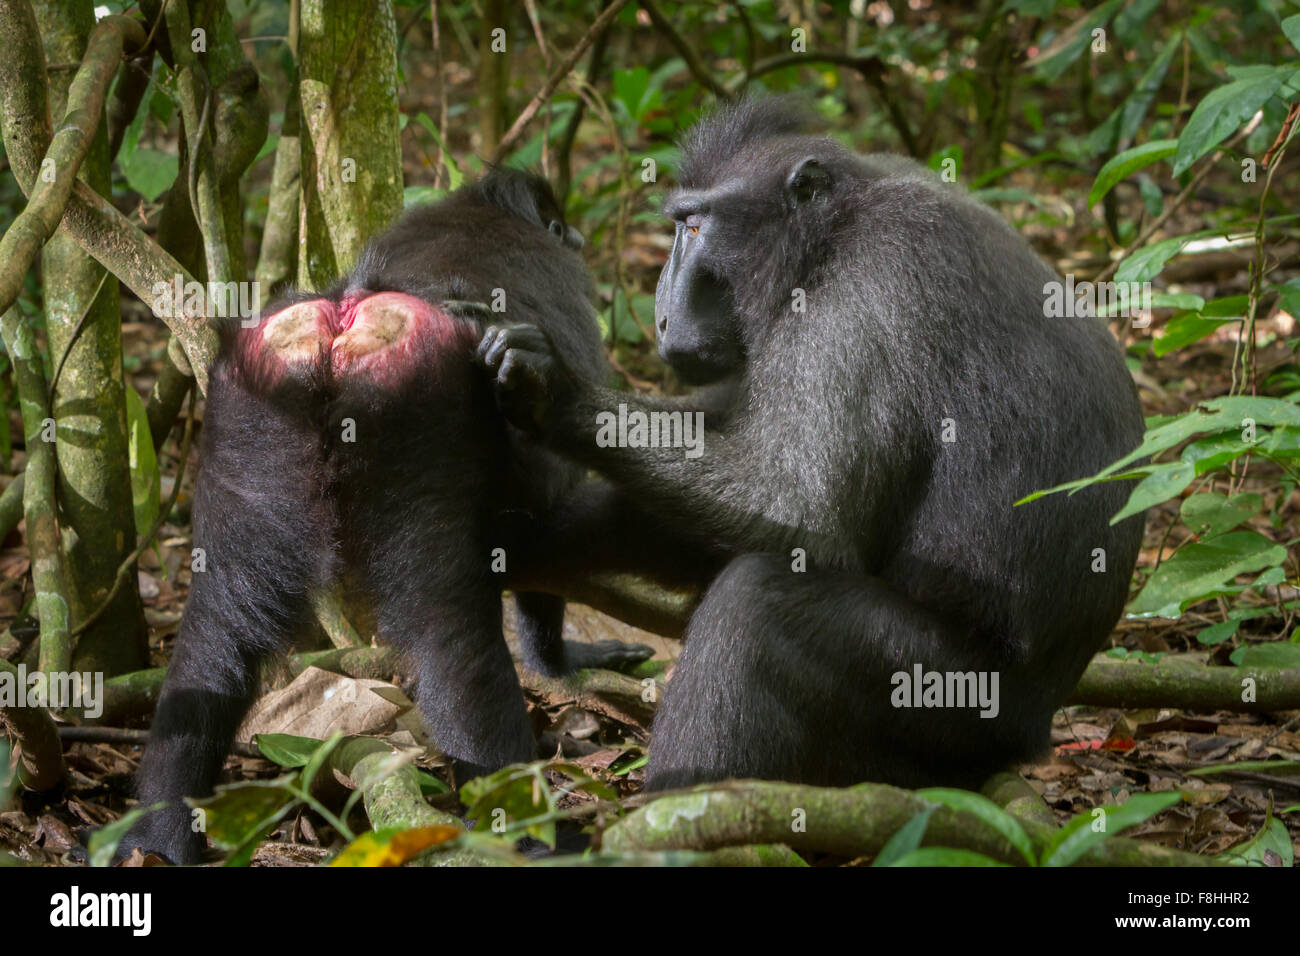 Un macaque Sulawesi à crête noire (Macaca nigra) est en train d'être entretenu par un autre individu sur le sol forestier de la réserve naturelle de Tangkoko, en Indonésie. Banque D'Images